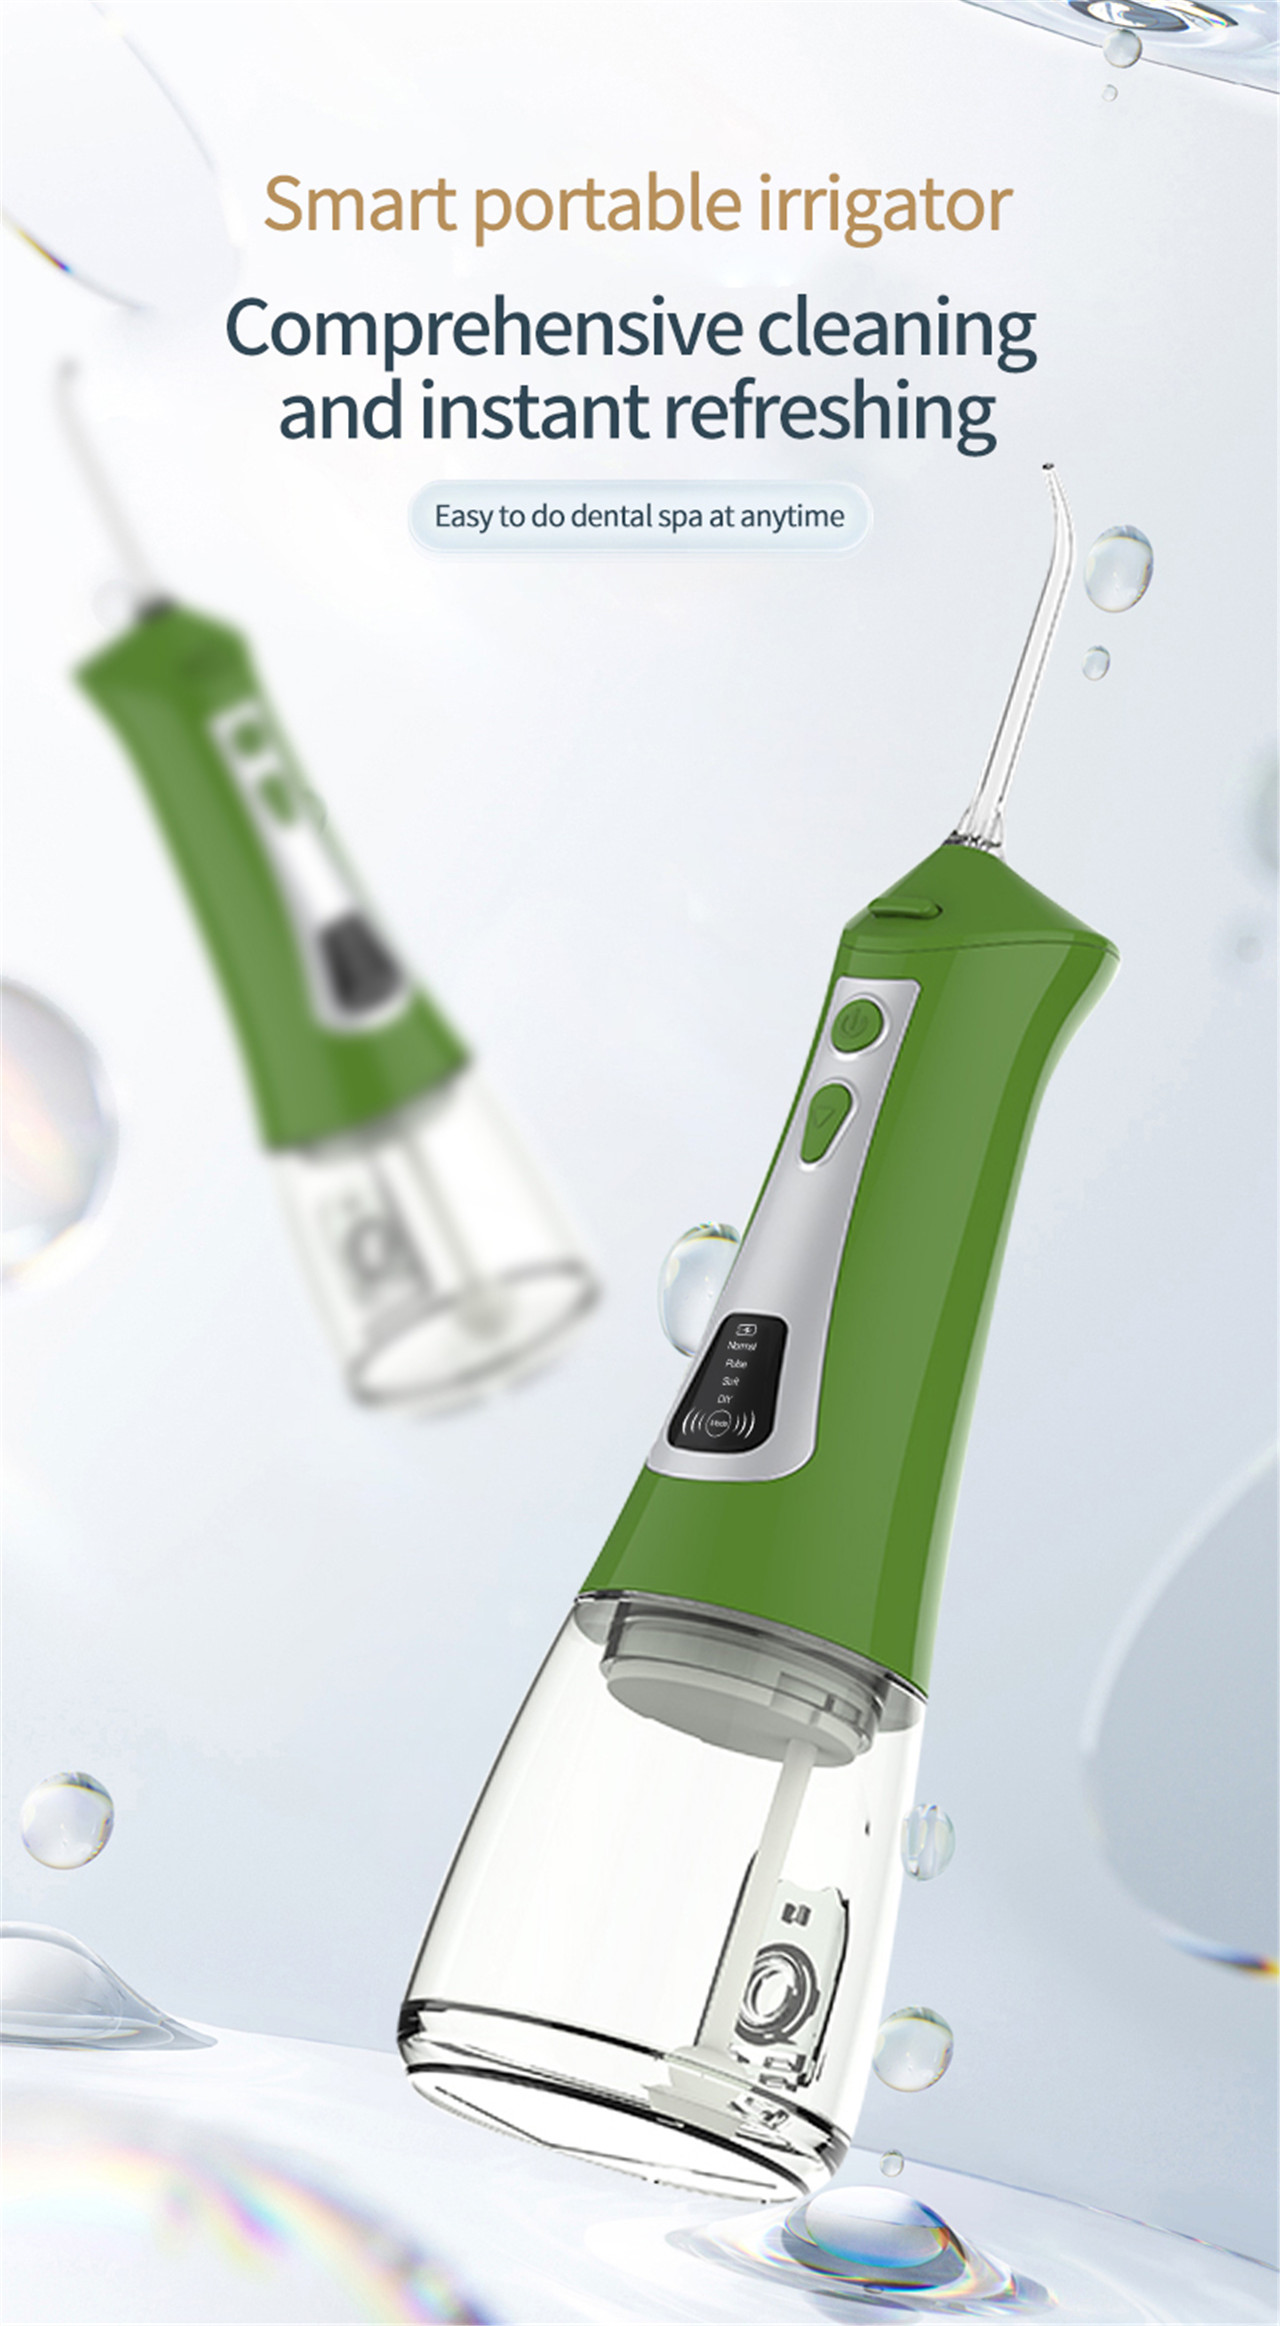 OLED-skjerm for munnskylling av vannplukker for tannbleking (1)